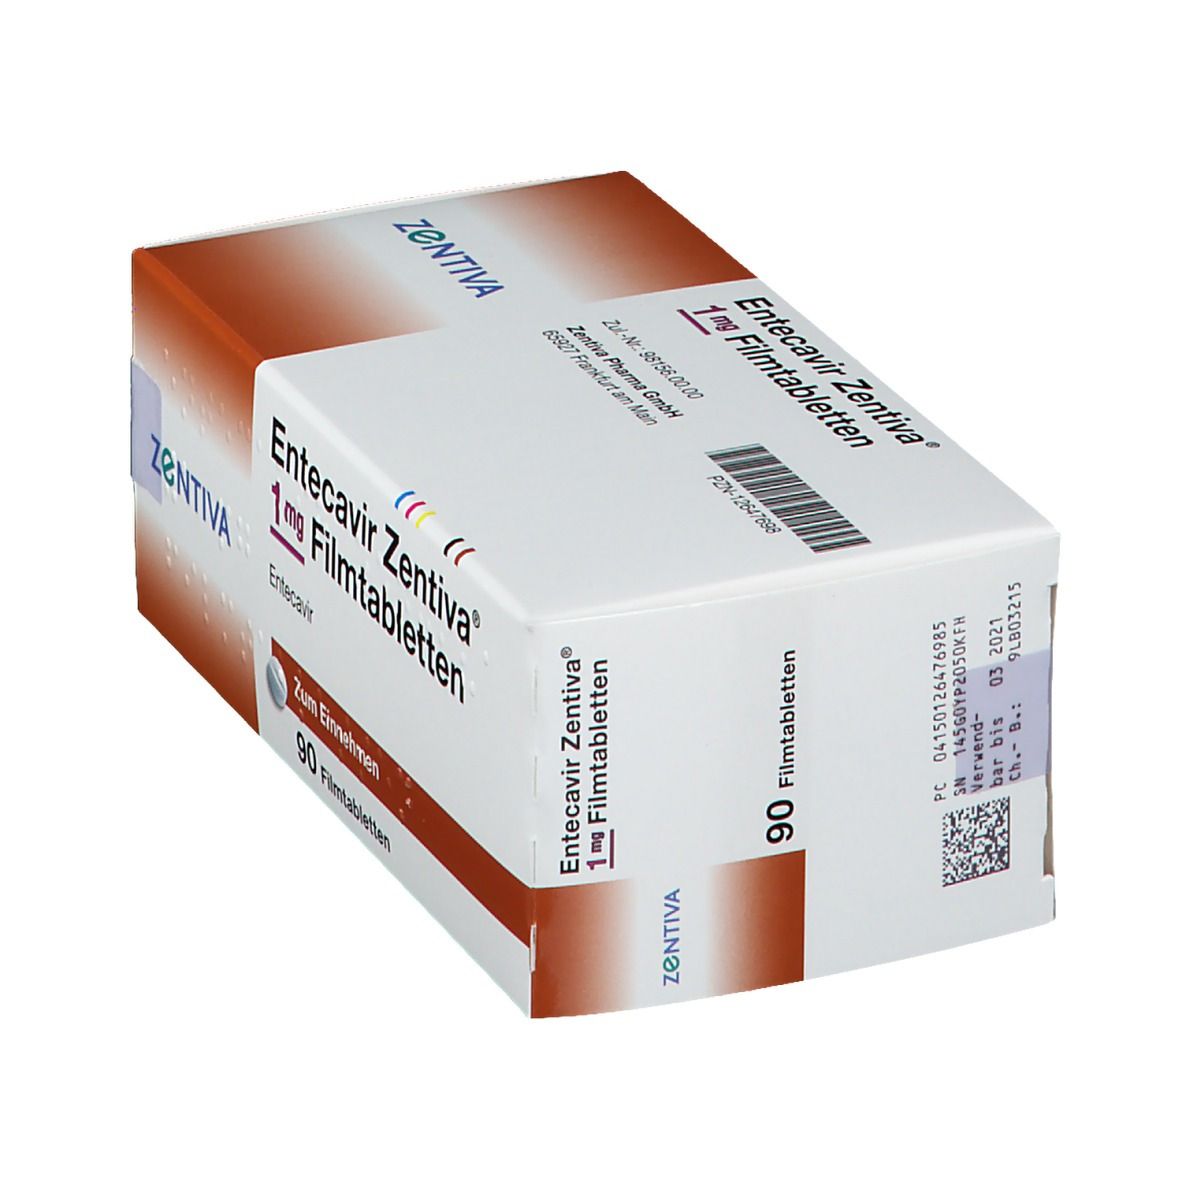 Entecavir Zentiva® 1 mg